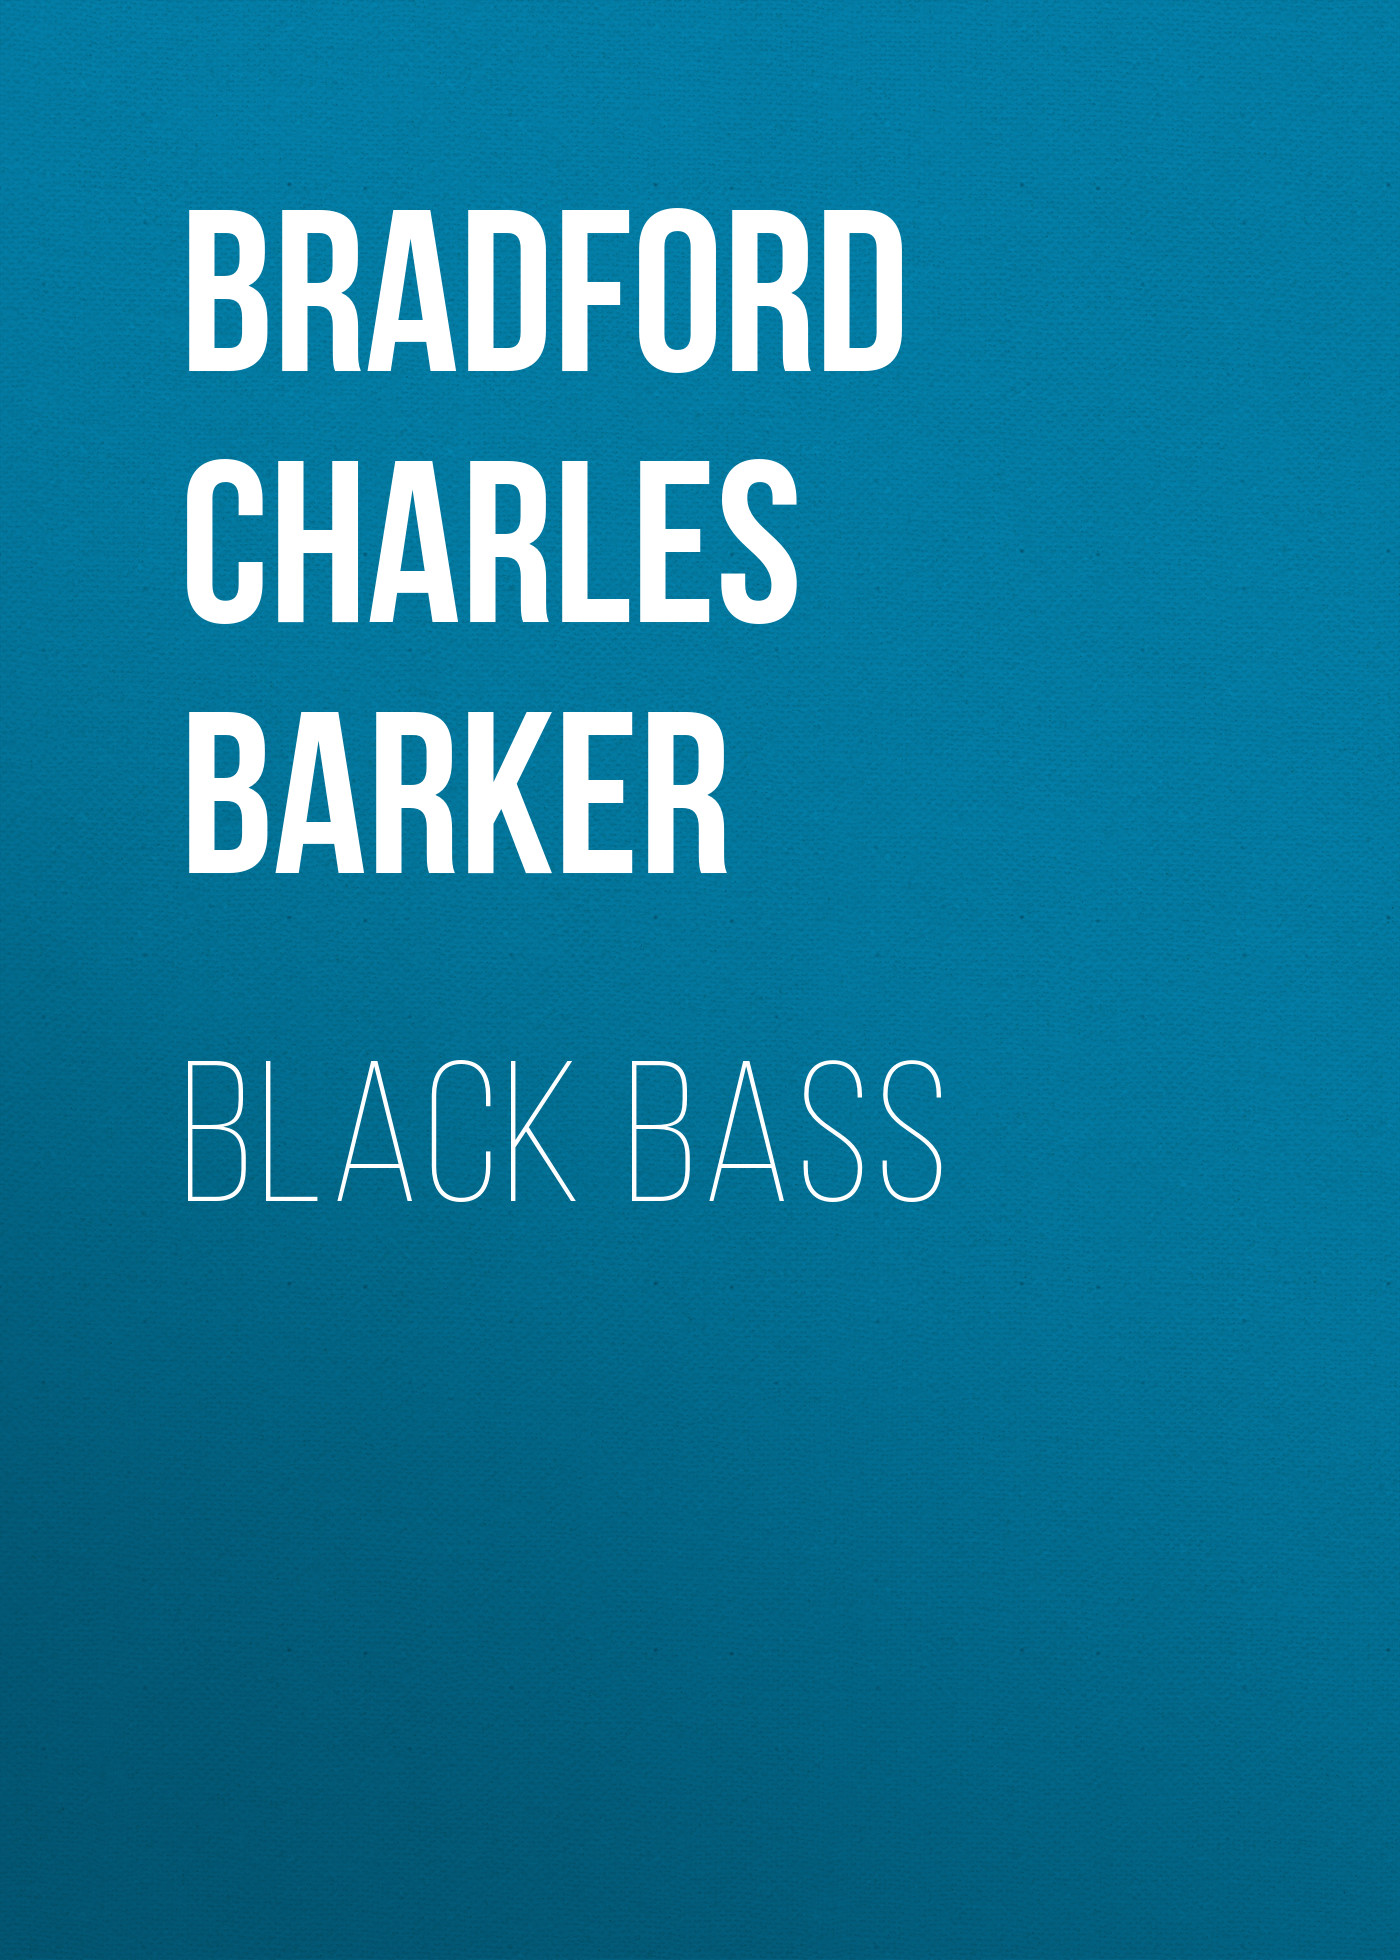 Книга Black Bass из серии , созданная Charles Bradford, может относится к жанру Зарубежная старинная литература, Зарубежная классика. Стоимость электронной книги Black Bass с идентификатором 24173844 составляет 0.90 руб.